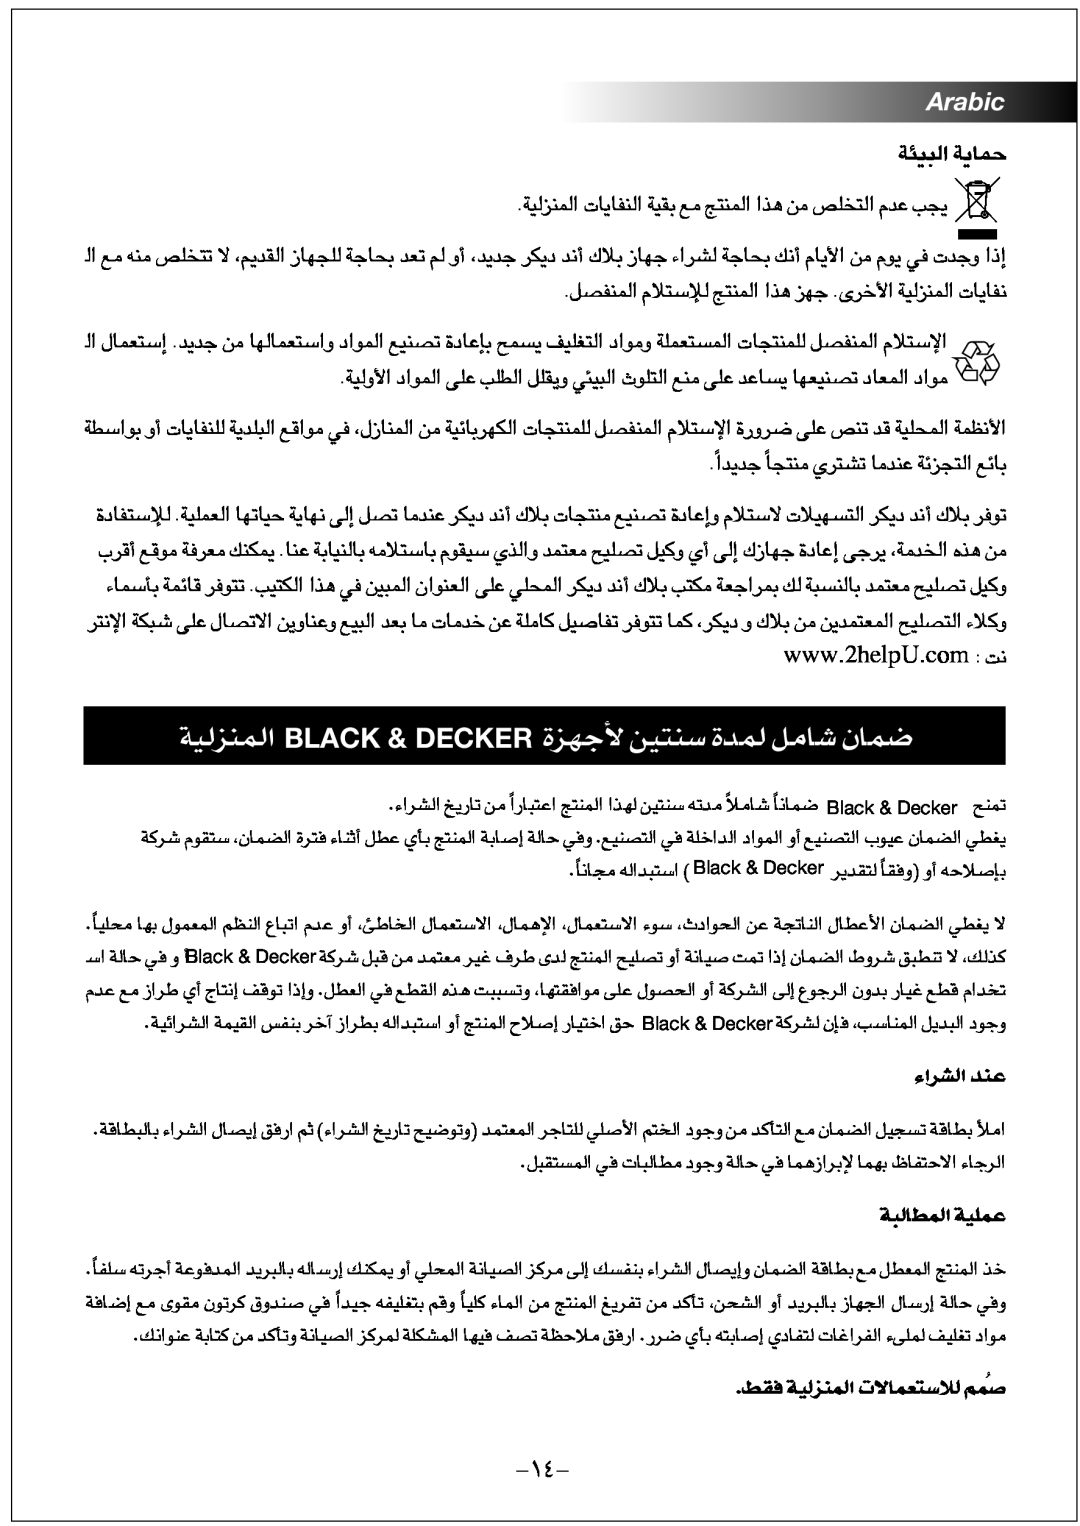 Black & Decker JC100 …§Ne Os∑ßM …Lb∞ U±q LUÊ, Black & Decker, Ad«¡∞« ´Mb, Ij≠ OW∞LMe∞« FLUô‹∑öß∞ ÅÔLr, W∞∂Ldu∞« ´Lkow 